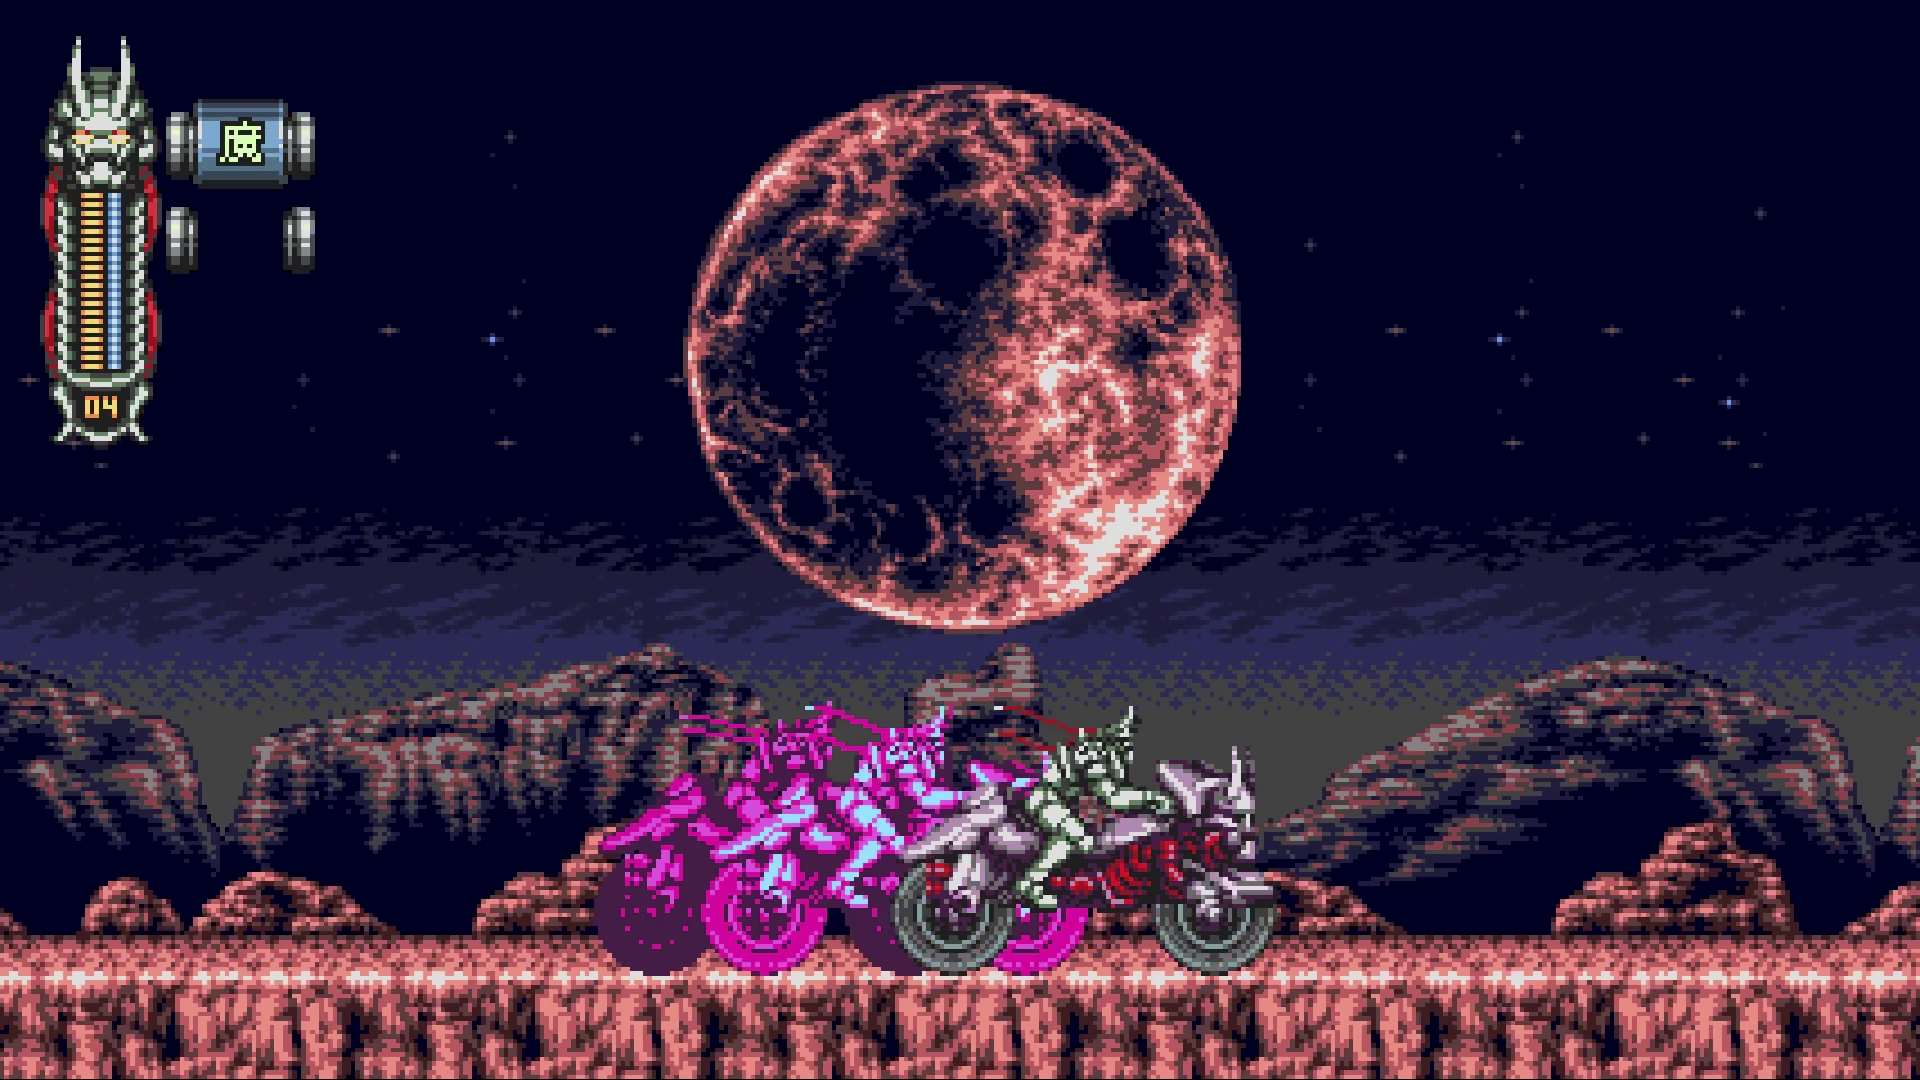 An image of 16-bit style action platformer Vengeful Guardian: Moonrider